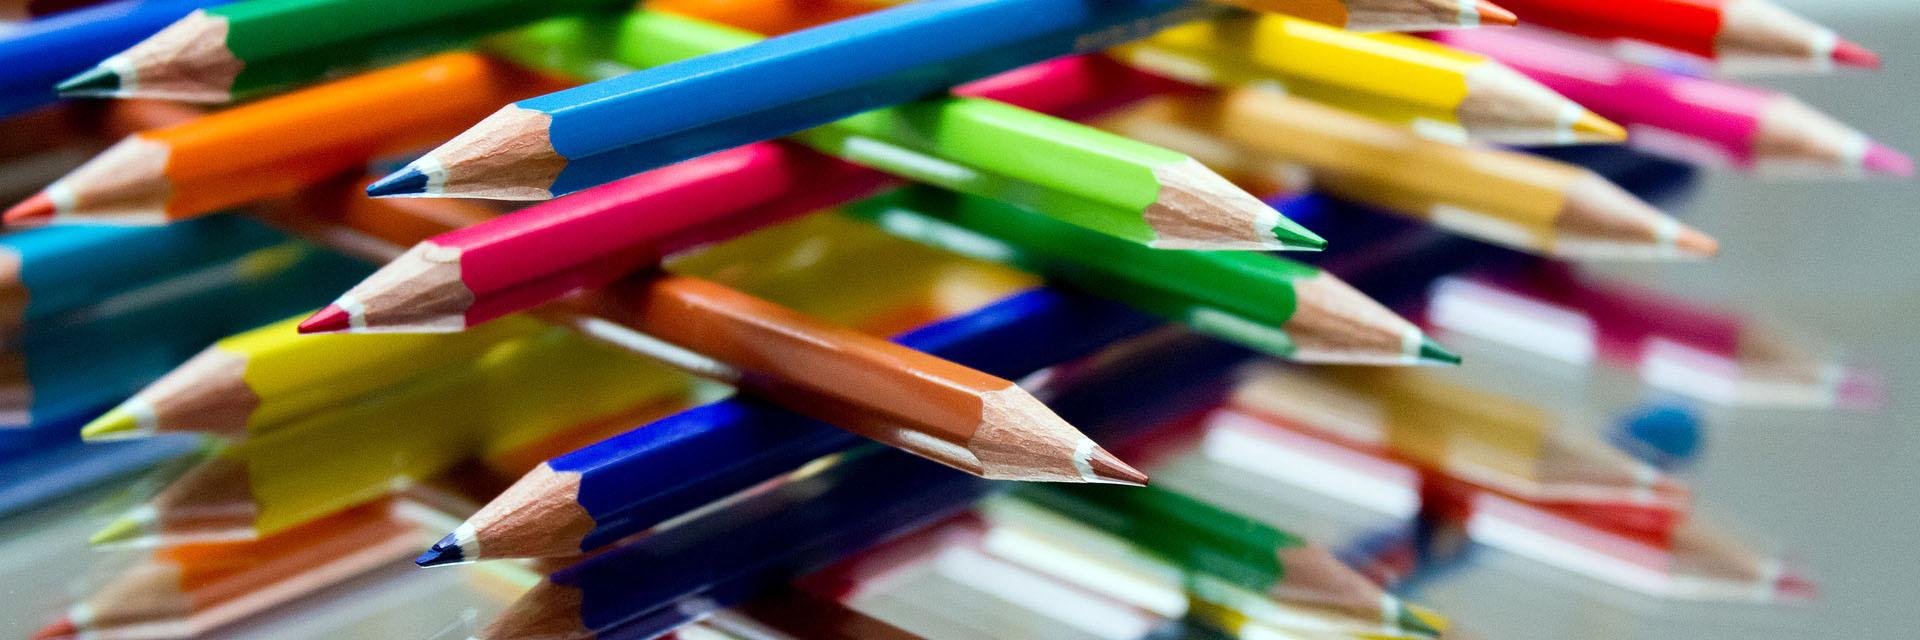 colored-pencils-2934857_1920 (c) pixabay.com